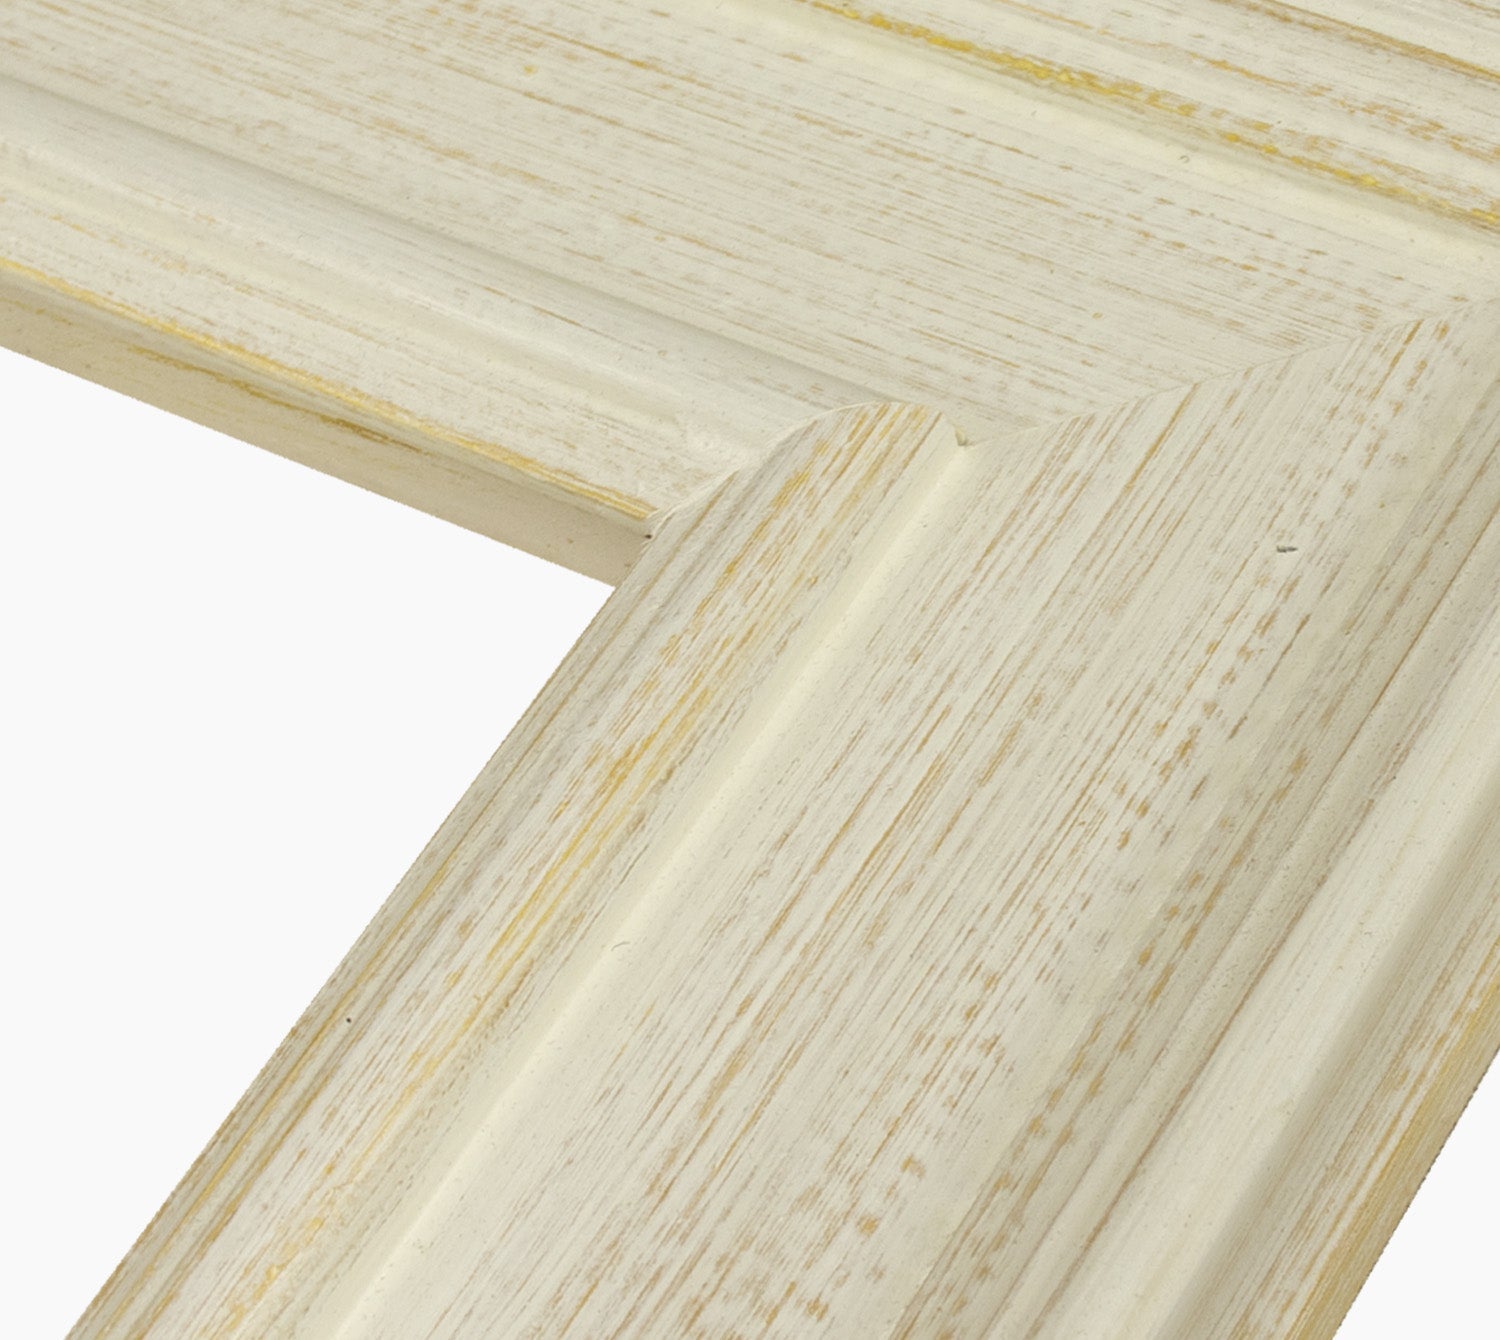 740.915 cadre en bois à fond ocre blanc mesure de profil 100x50 mm